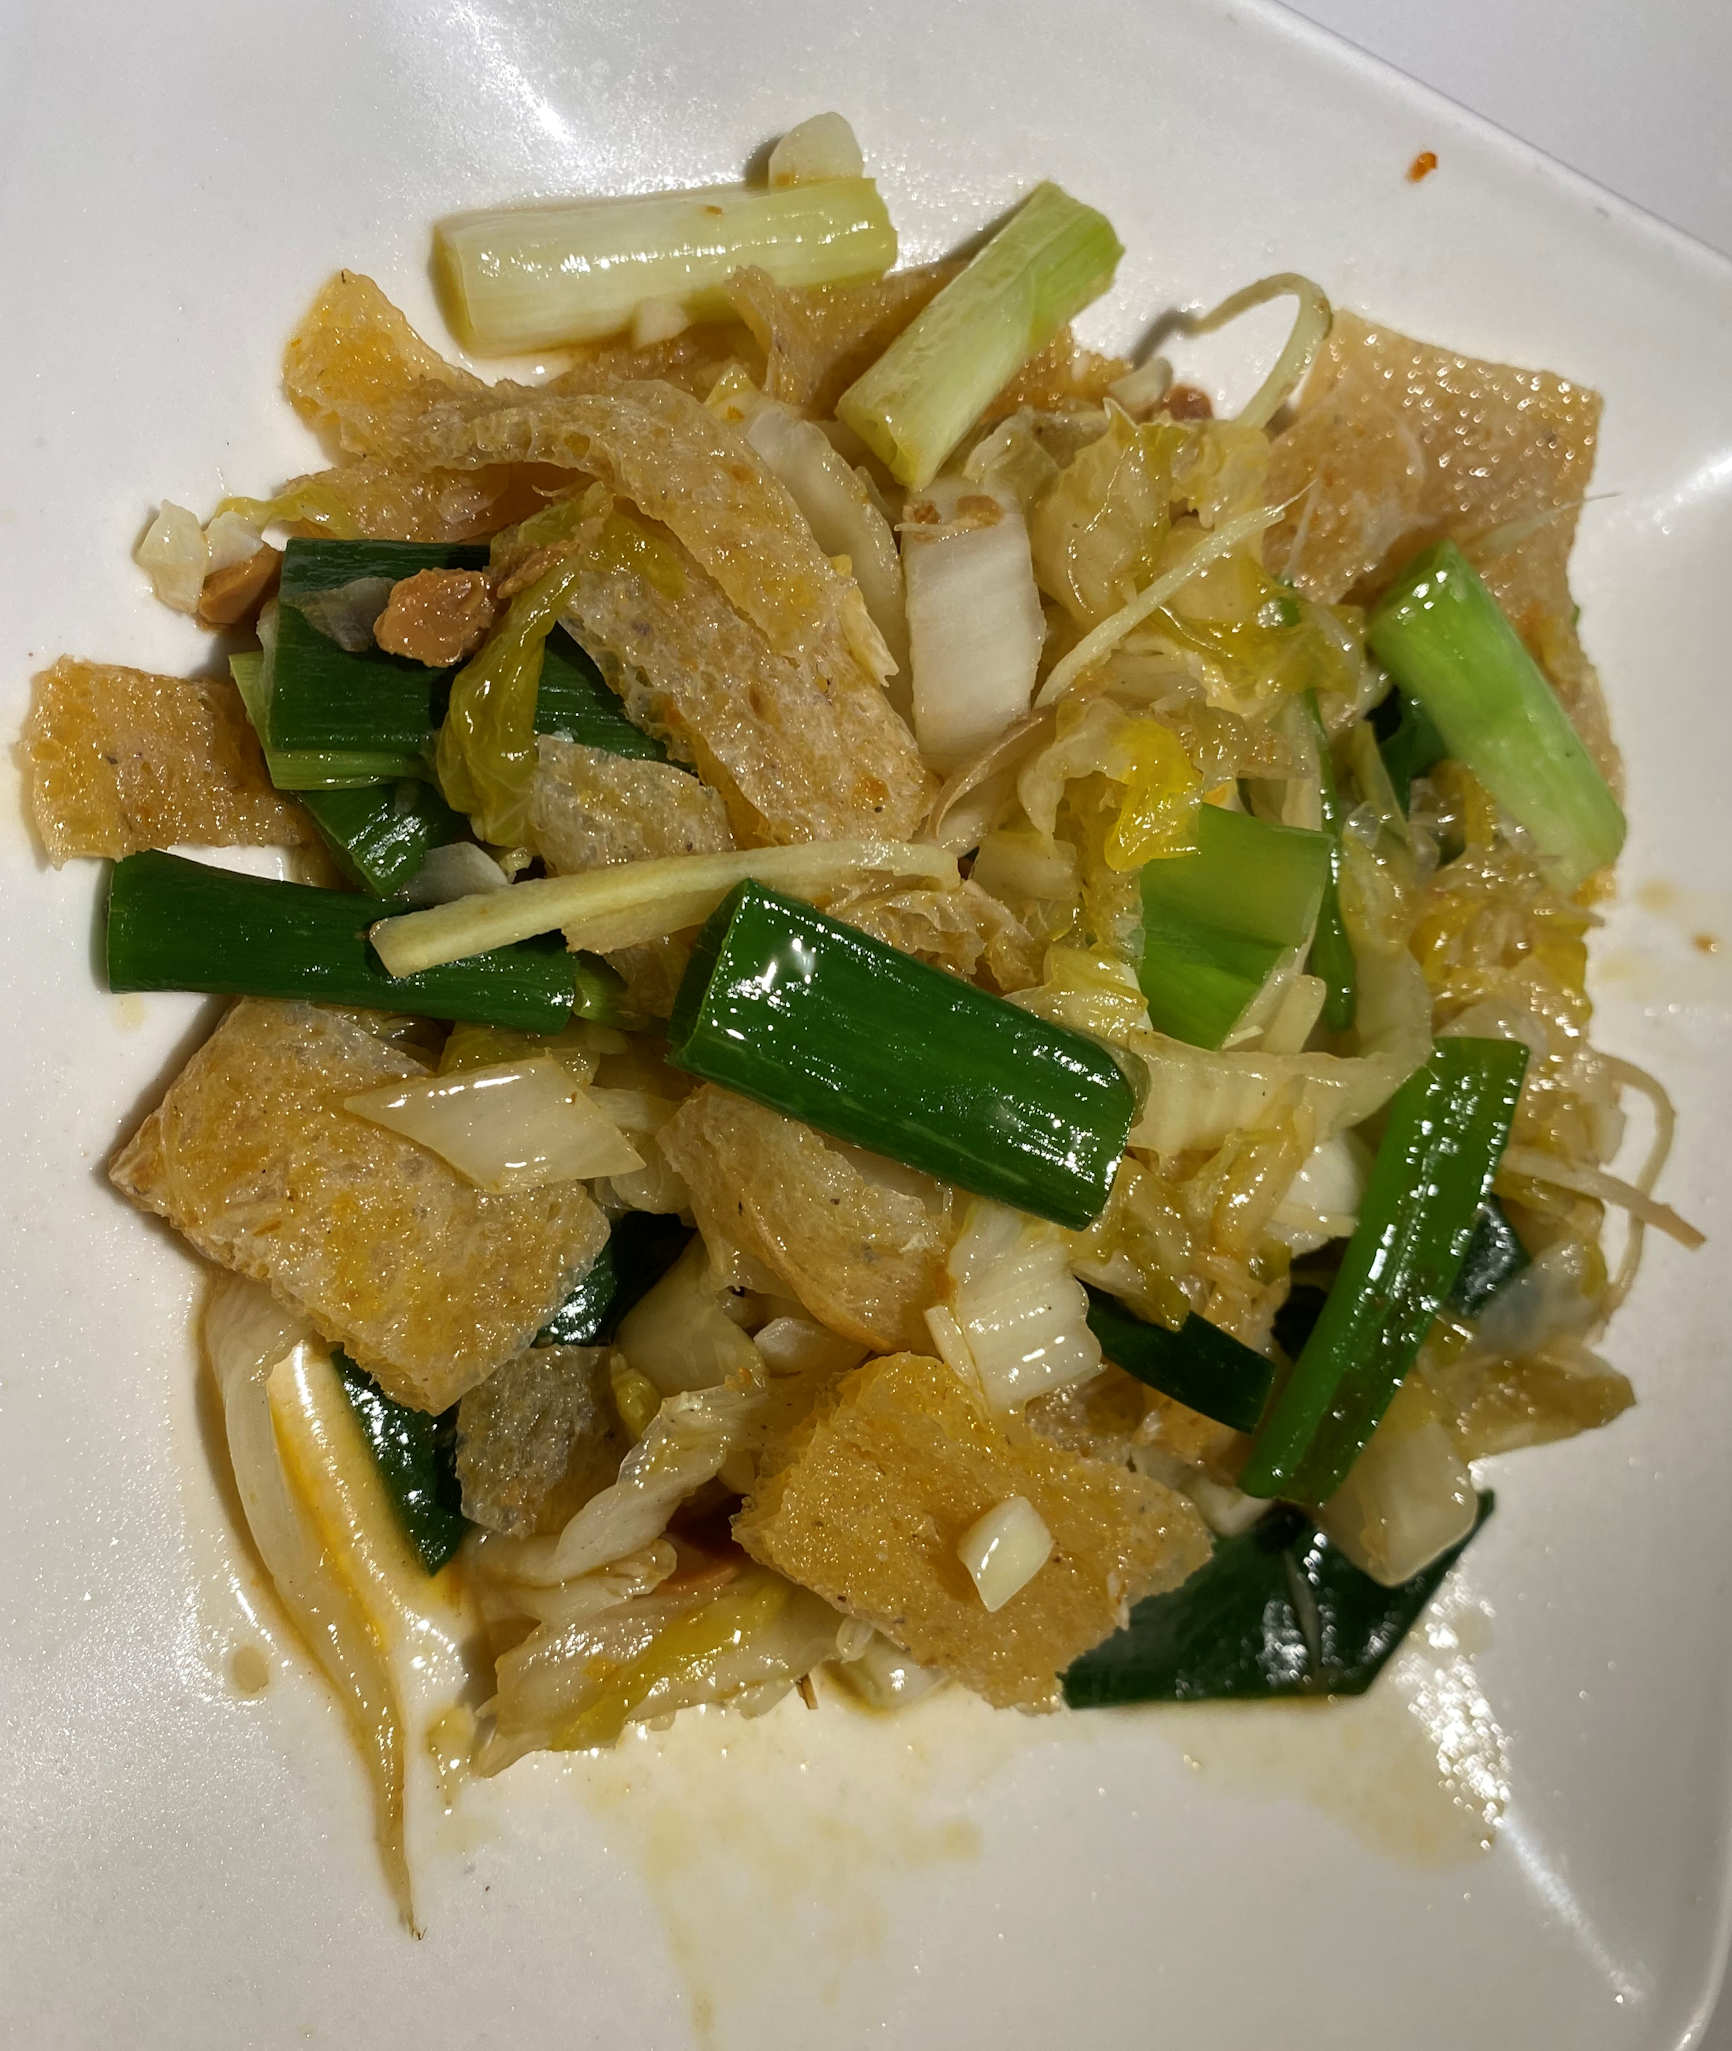 Shimi-konnyaku dishes from Taiwan